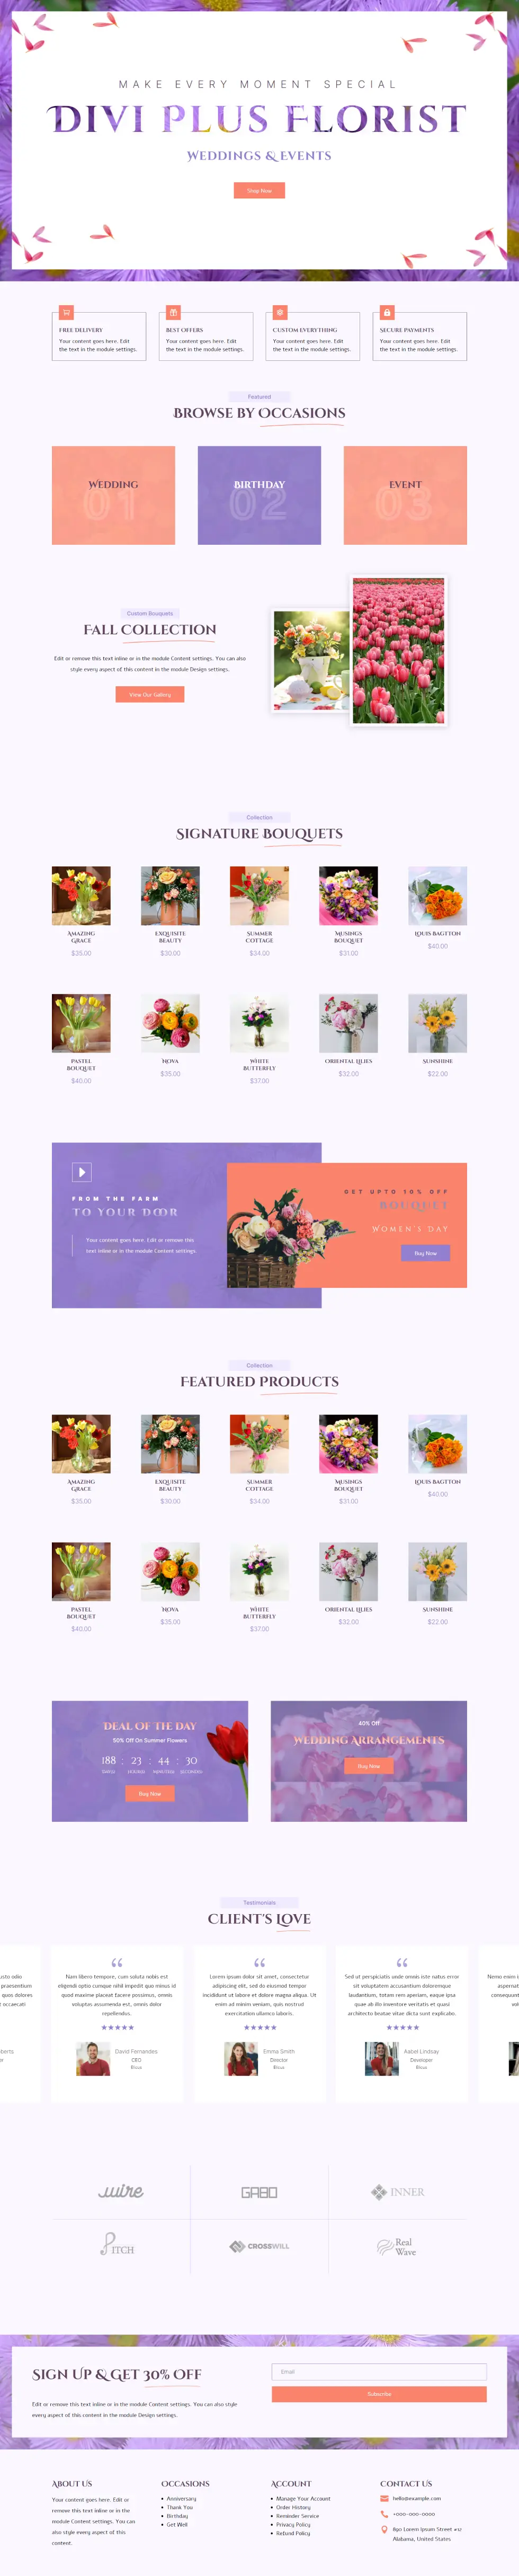 Florist layout by Divi Plus